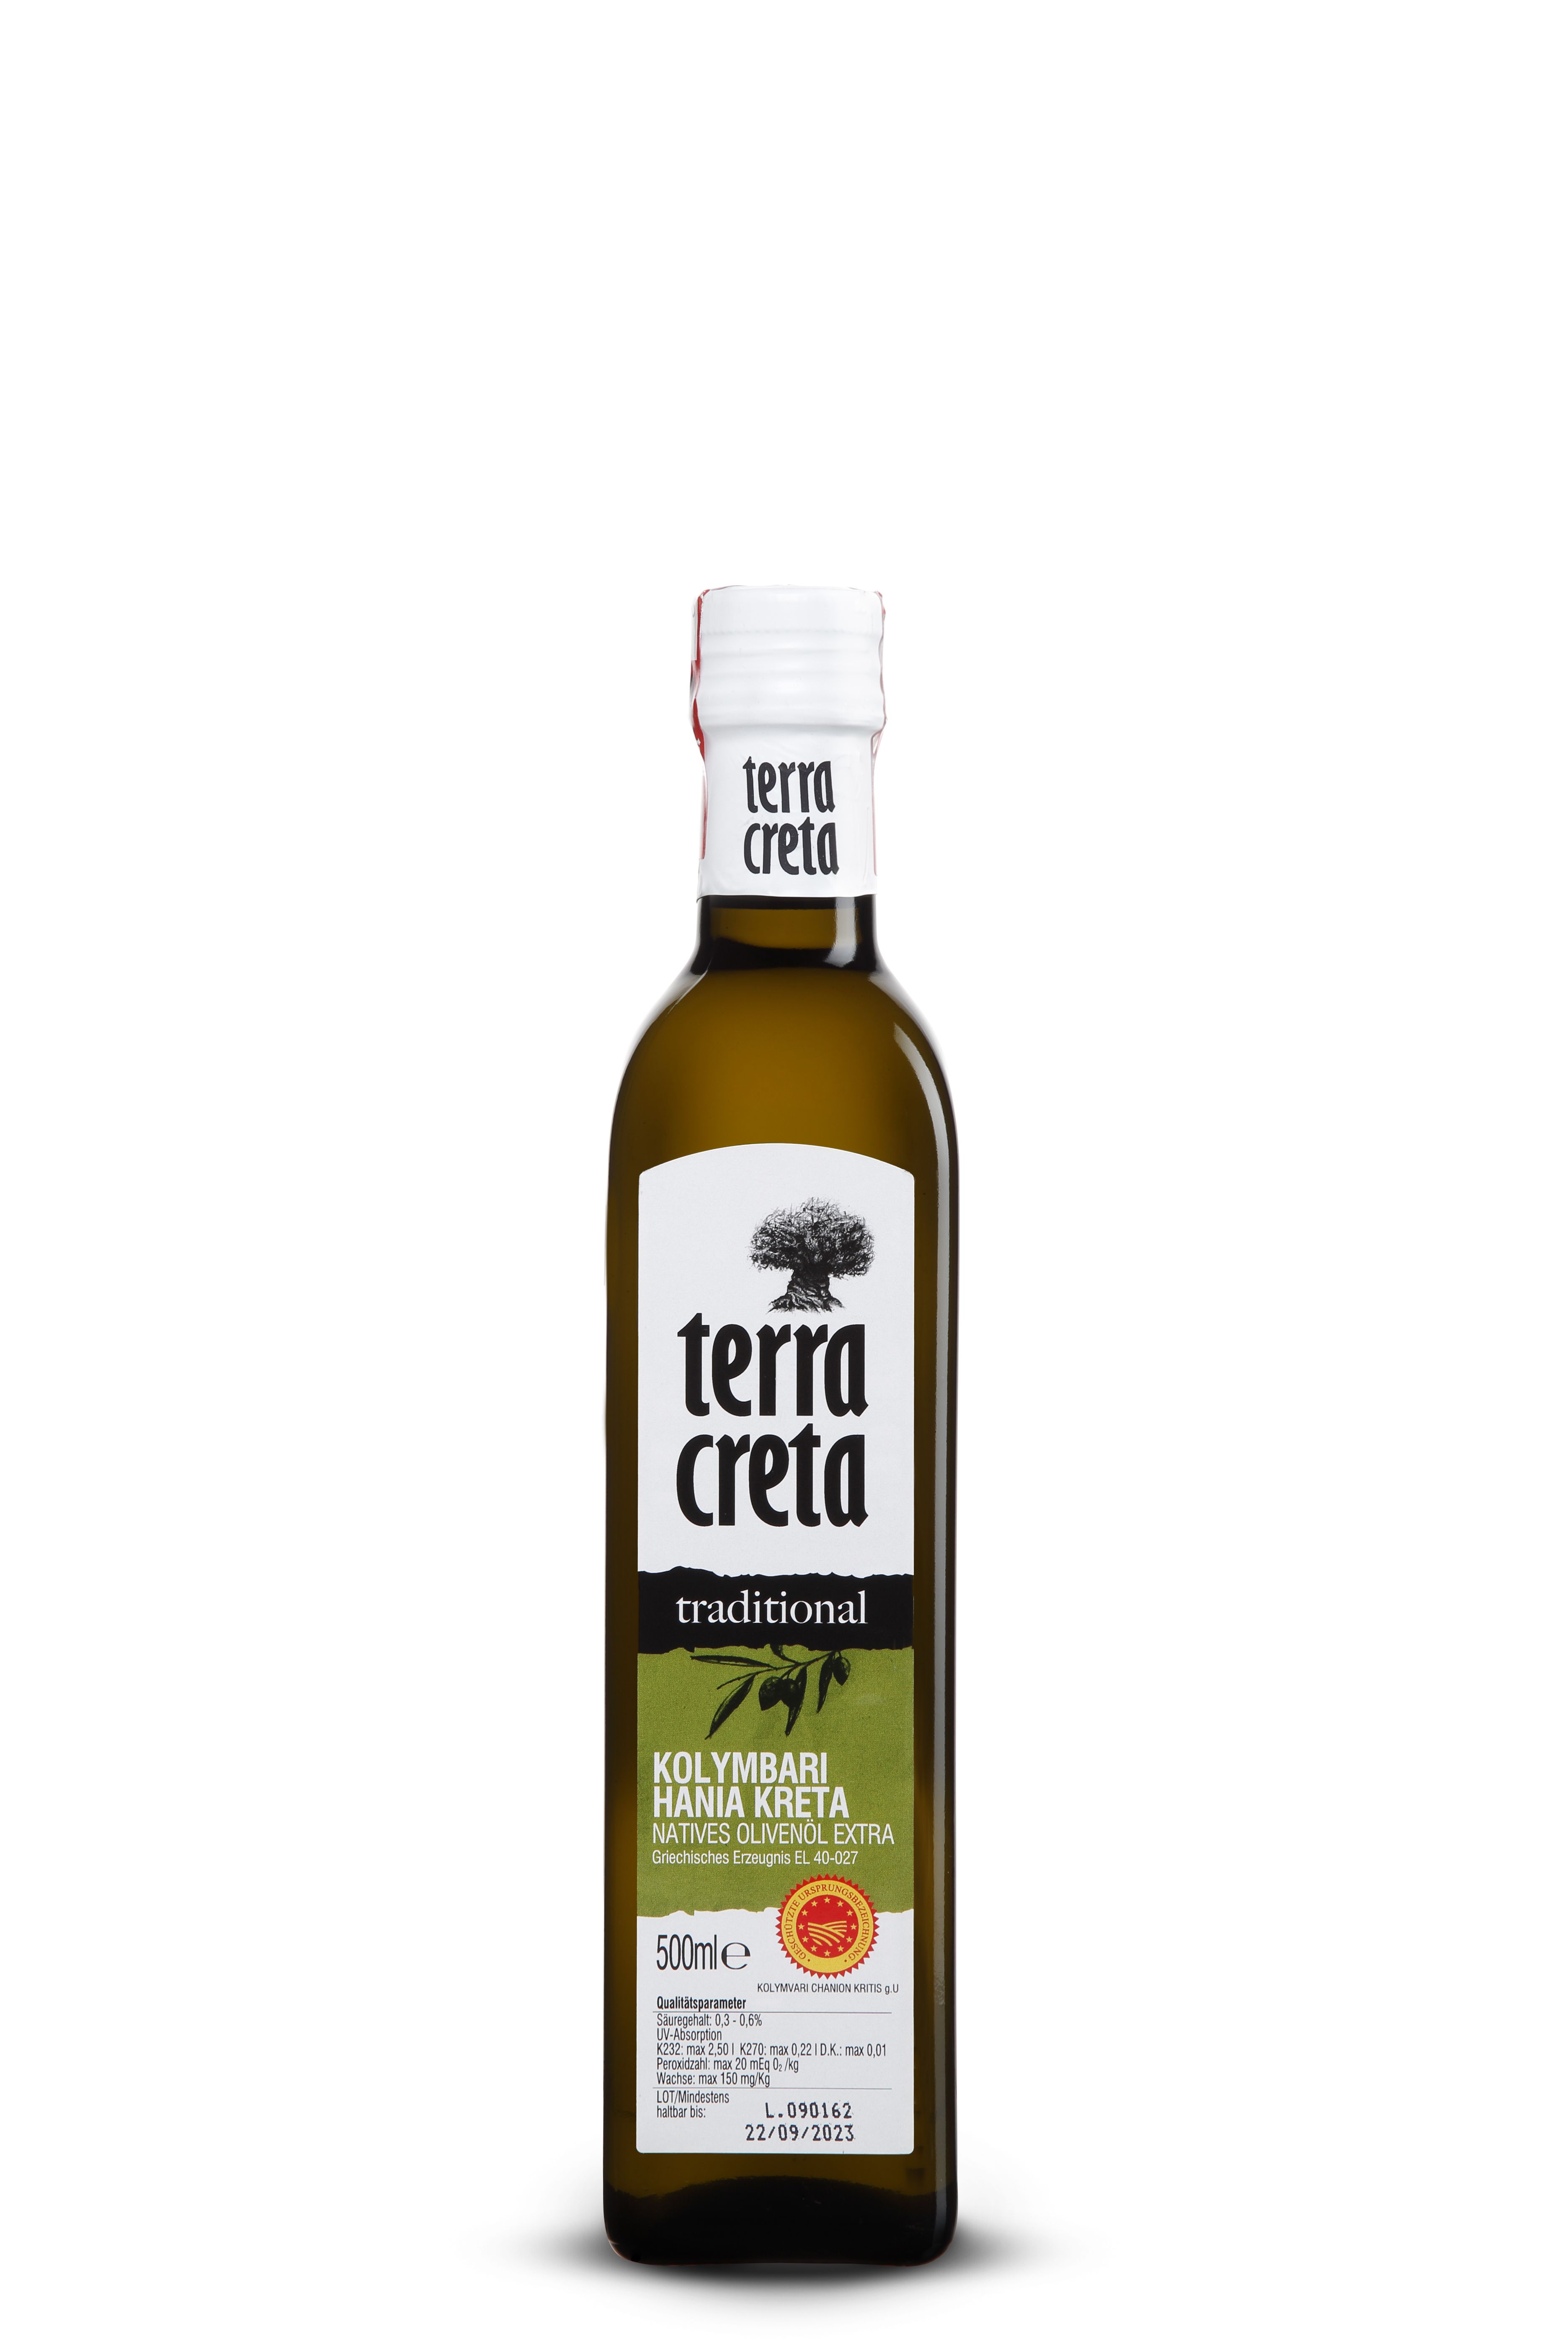 Extra natives Olivenöl